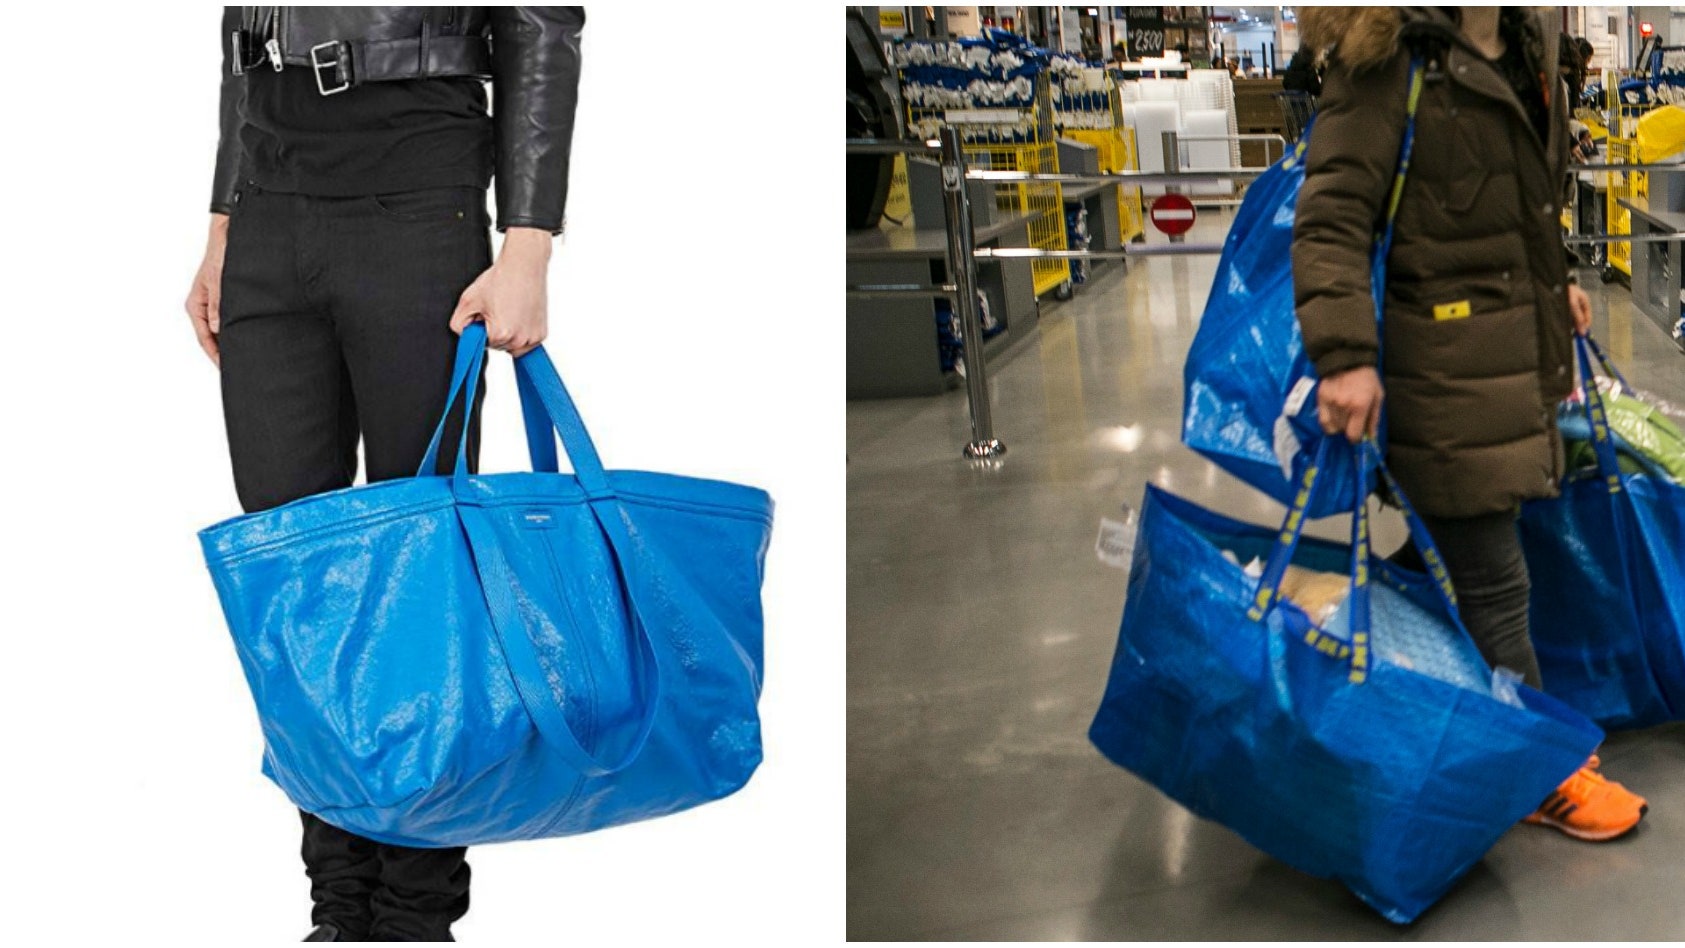 Trước đó vào năm 2017, Balenciaga cũng từng khiến giới mộ điệu bất ngờ khi tung ra một mẫu túi giống hệt mẫu túi mua sắm tại IKEA. Tuy nhiên, chiếc túi này ở IKEA làm bằng nylon và có mức giá chỉ 1 USD.